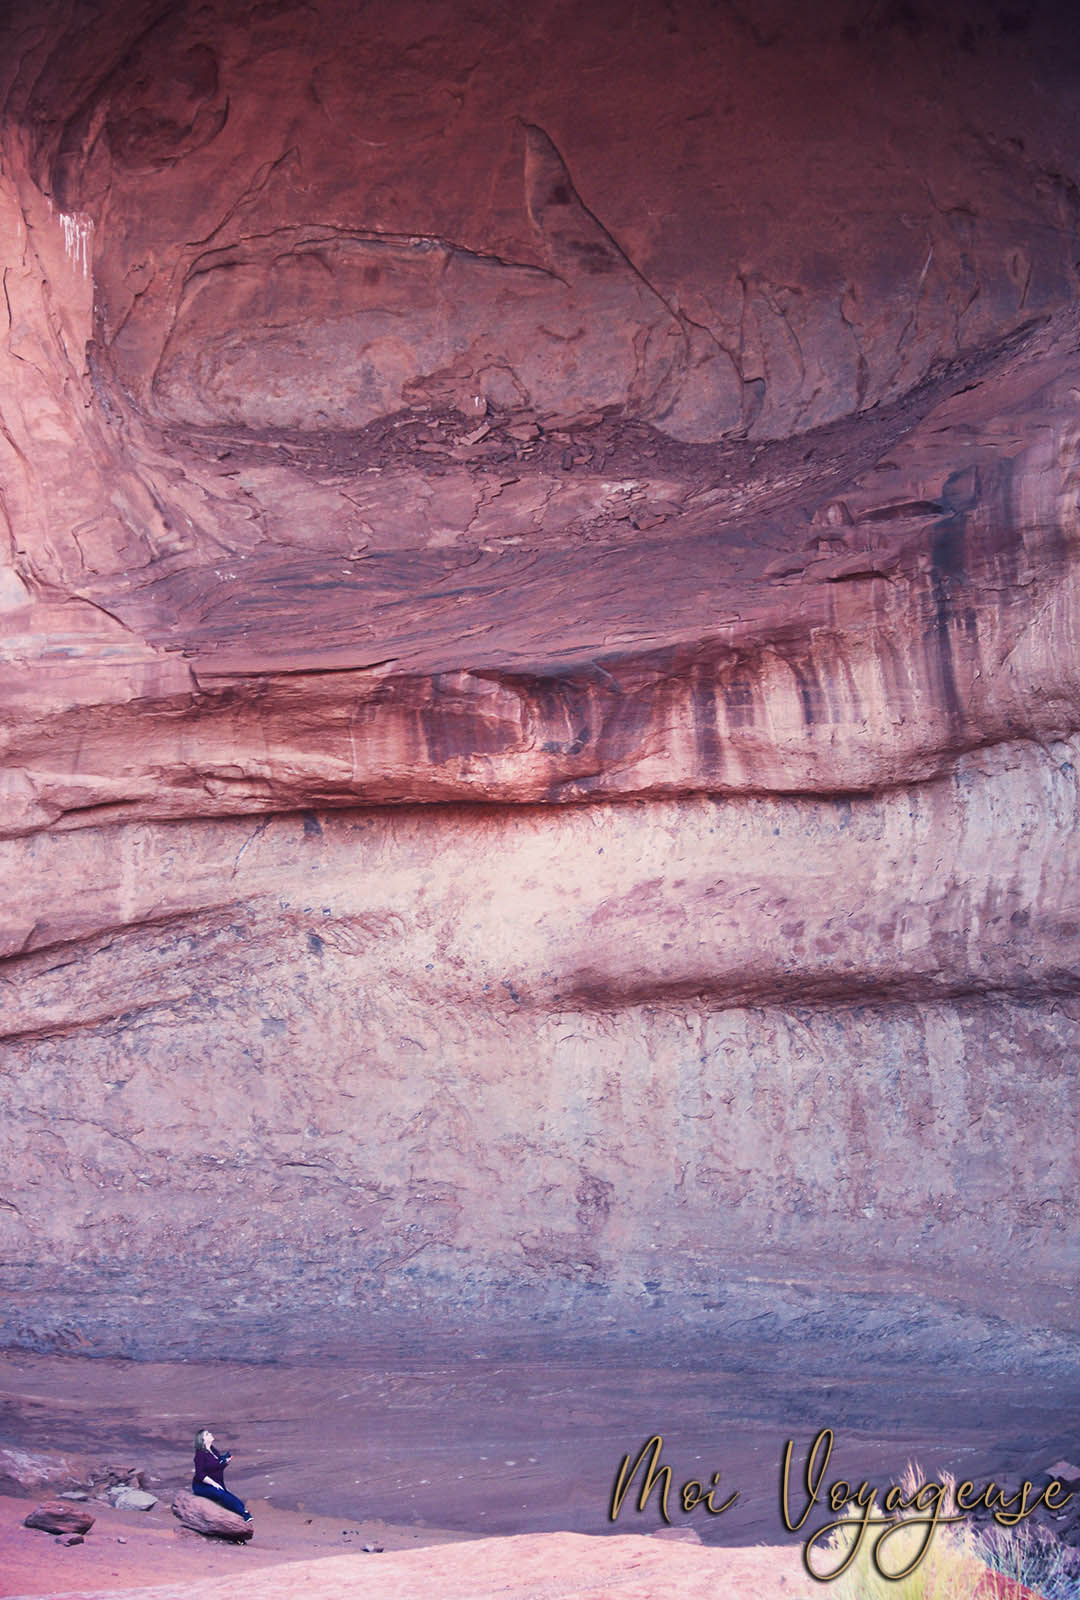 Monument Valley Arizona Road Trip USA Eye Heloise Moi voyageuse